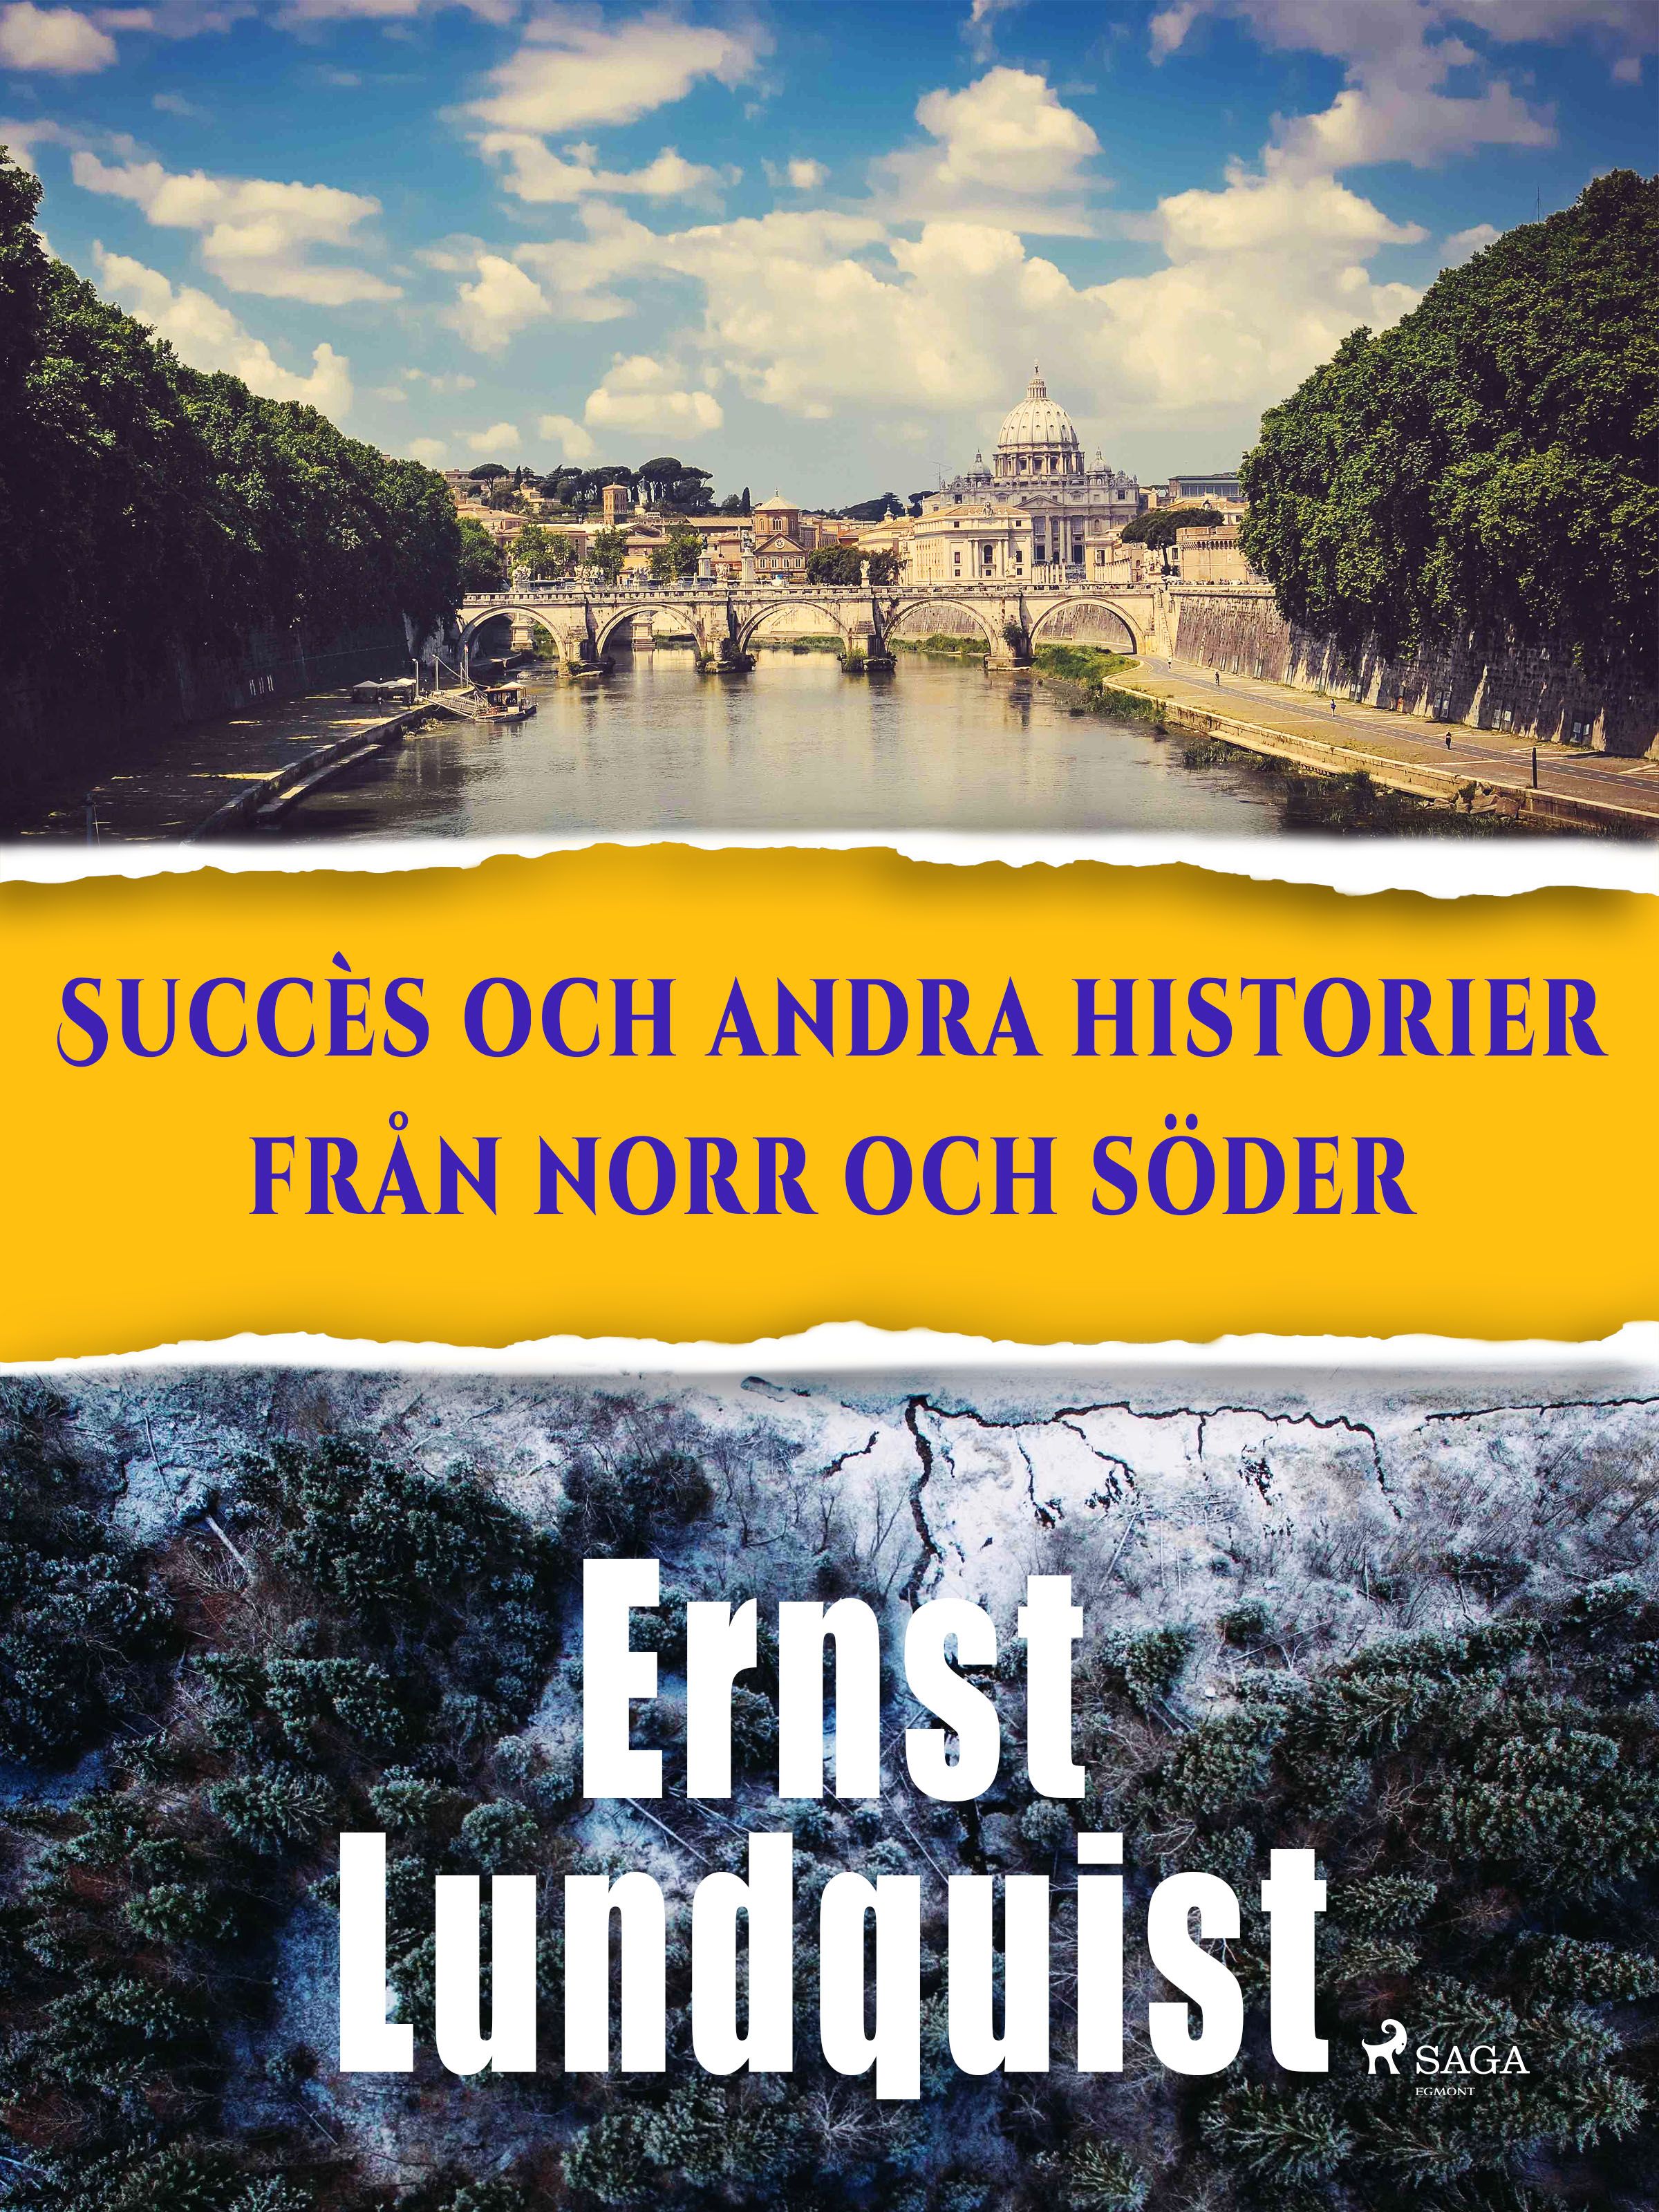 Succès och andra historier från norr och söder., e-bok av Ernst Lundquist